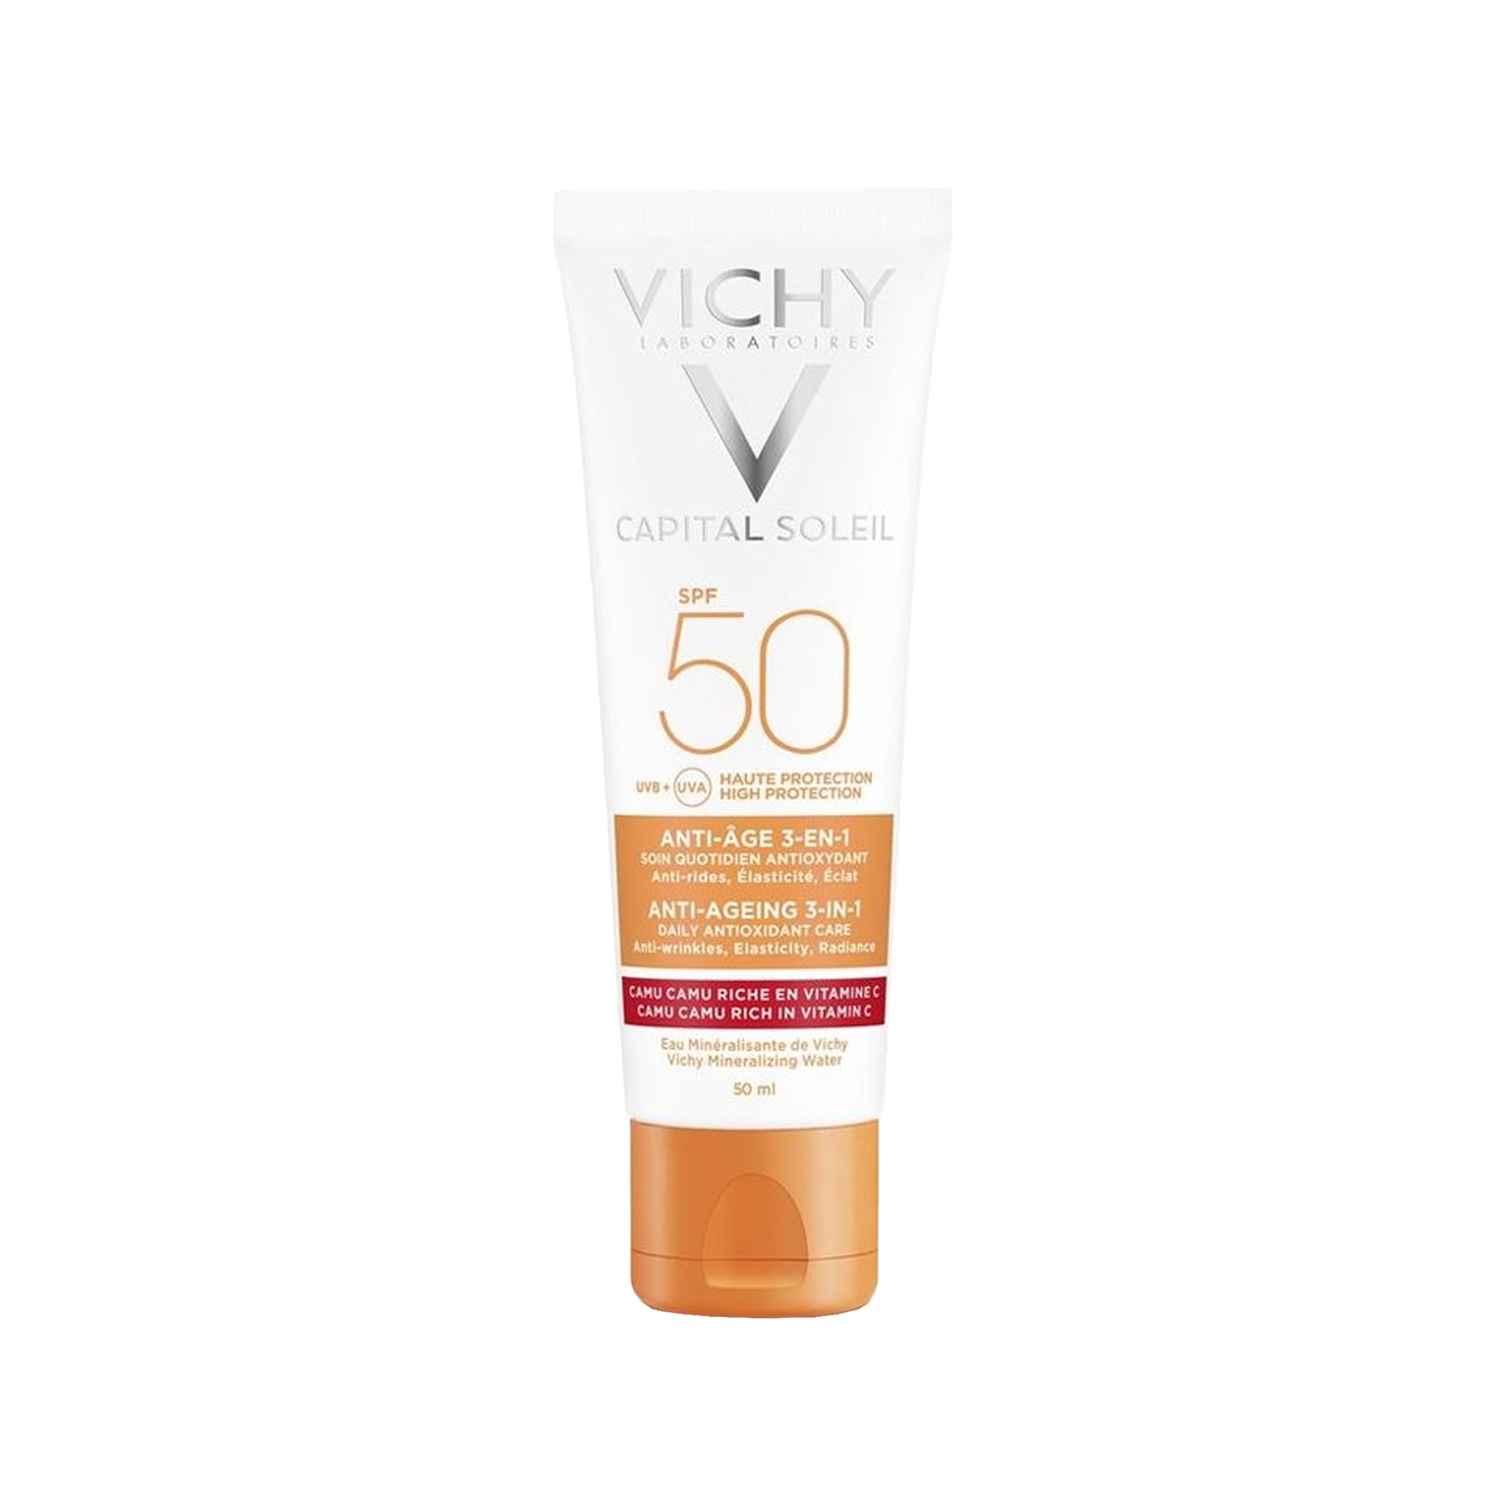 Vichy Capital Soleil Anti Aging Spf 50 Yaşlanma Karşıtı Yüz Güneş Kremi 50 ml